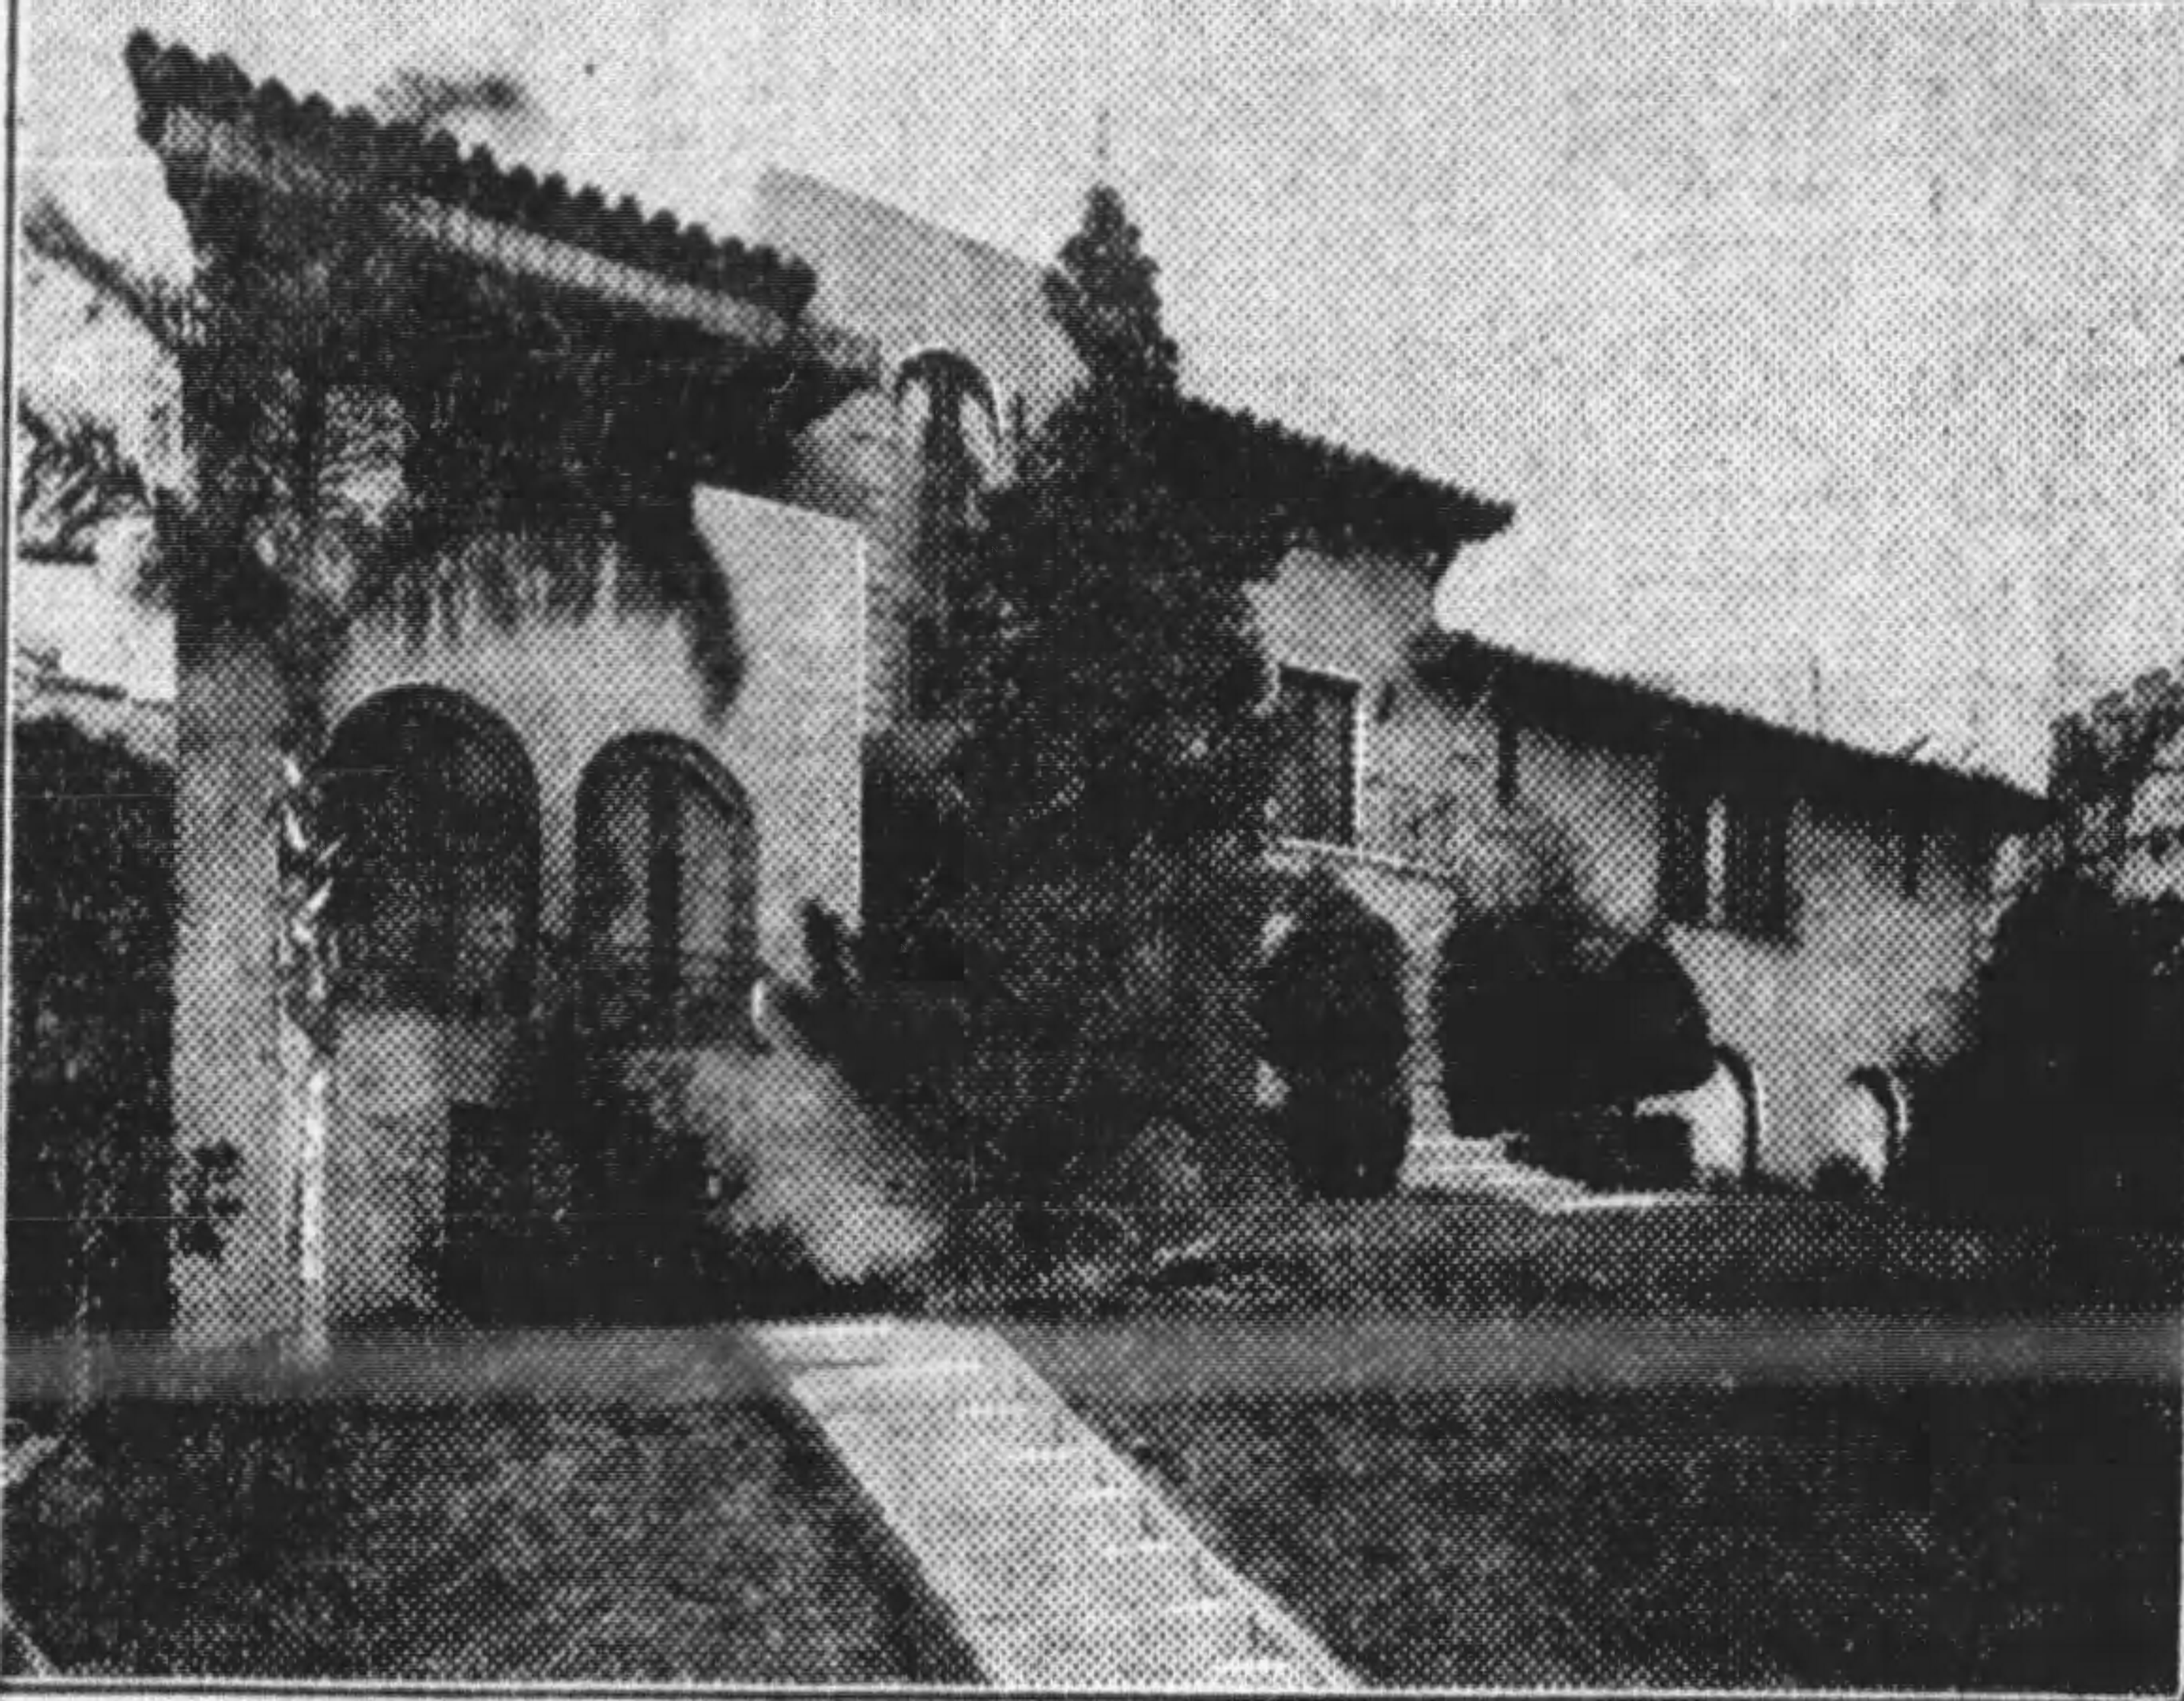 S01 E08: The Los Feliz Mystery House